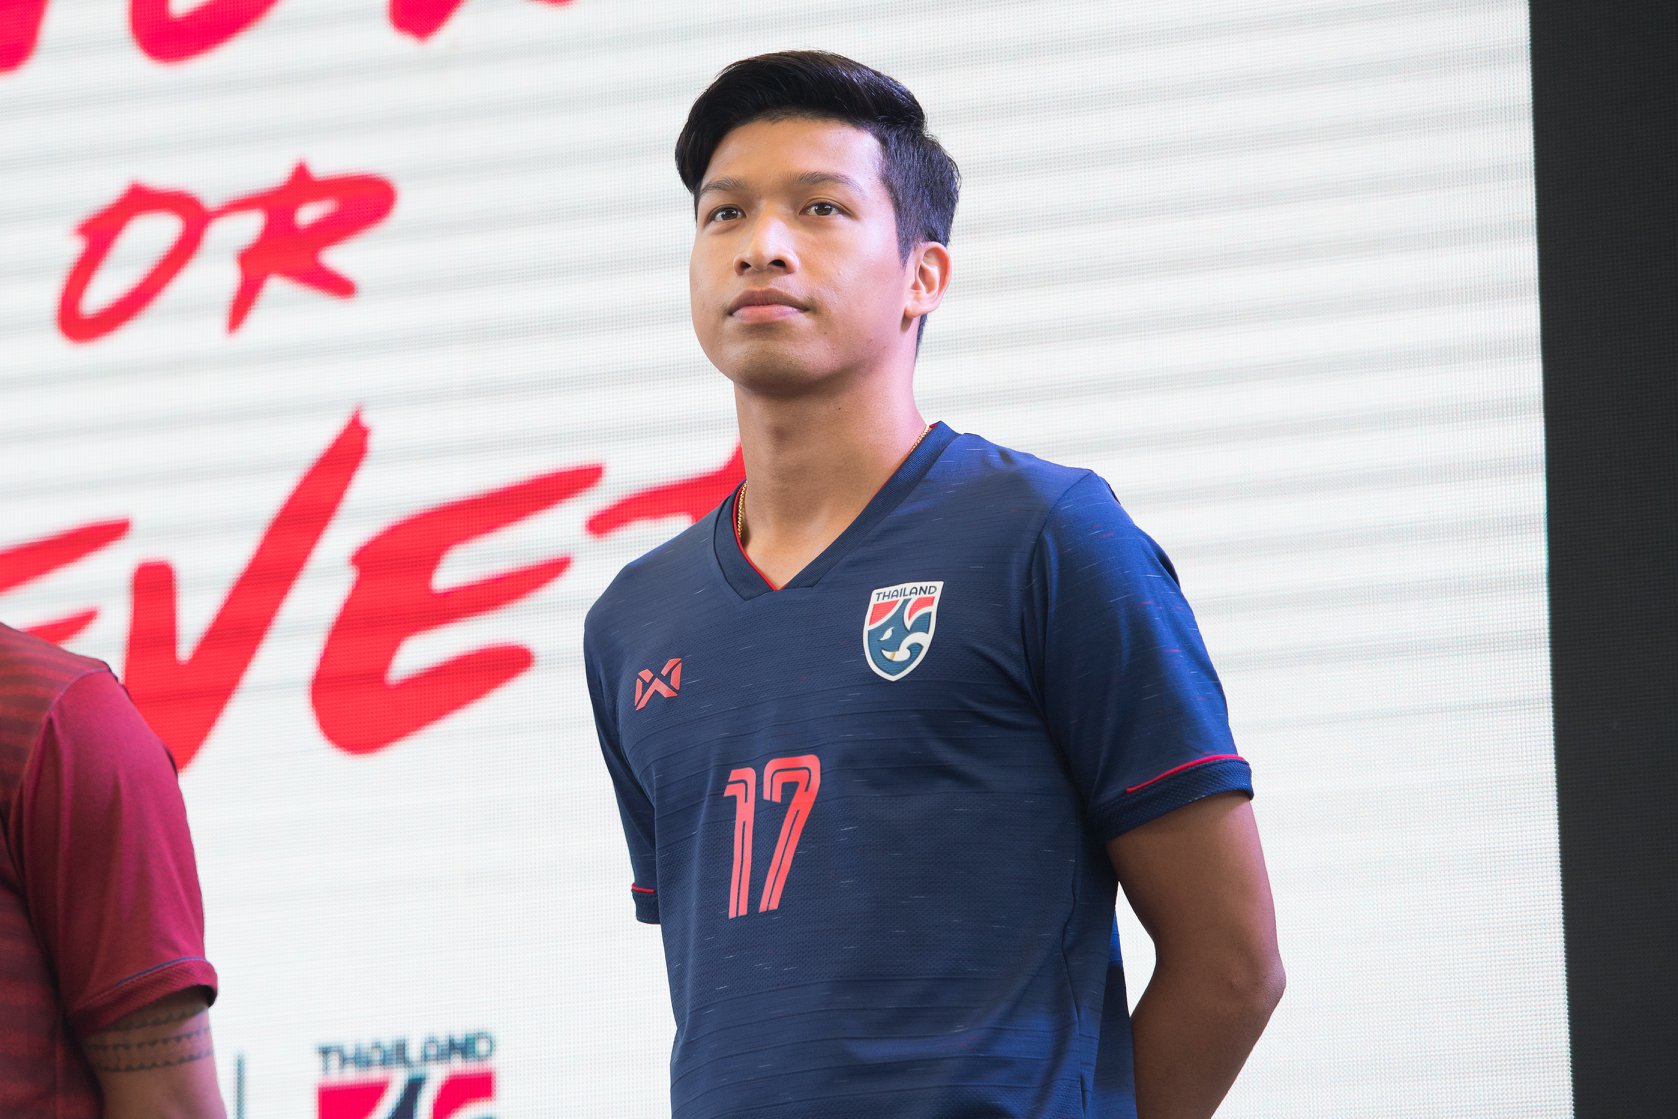 warrix thailand jersey 2019